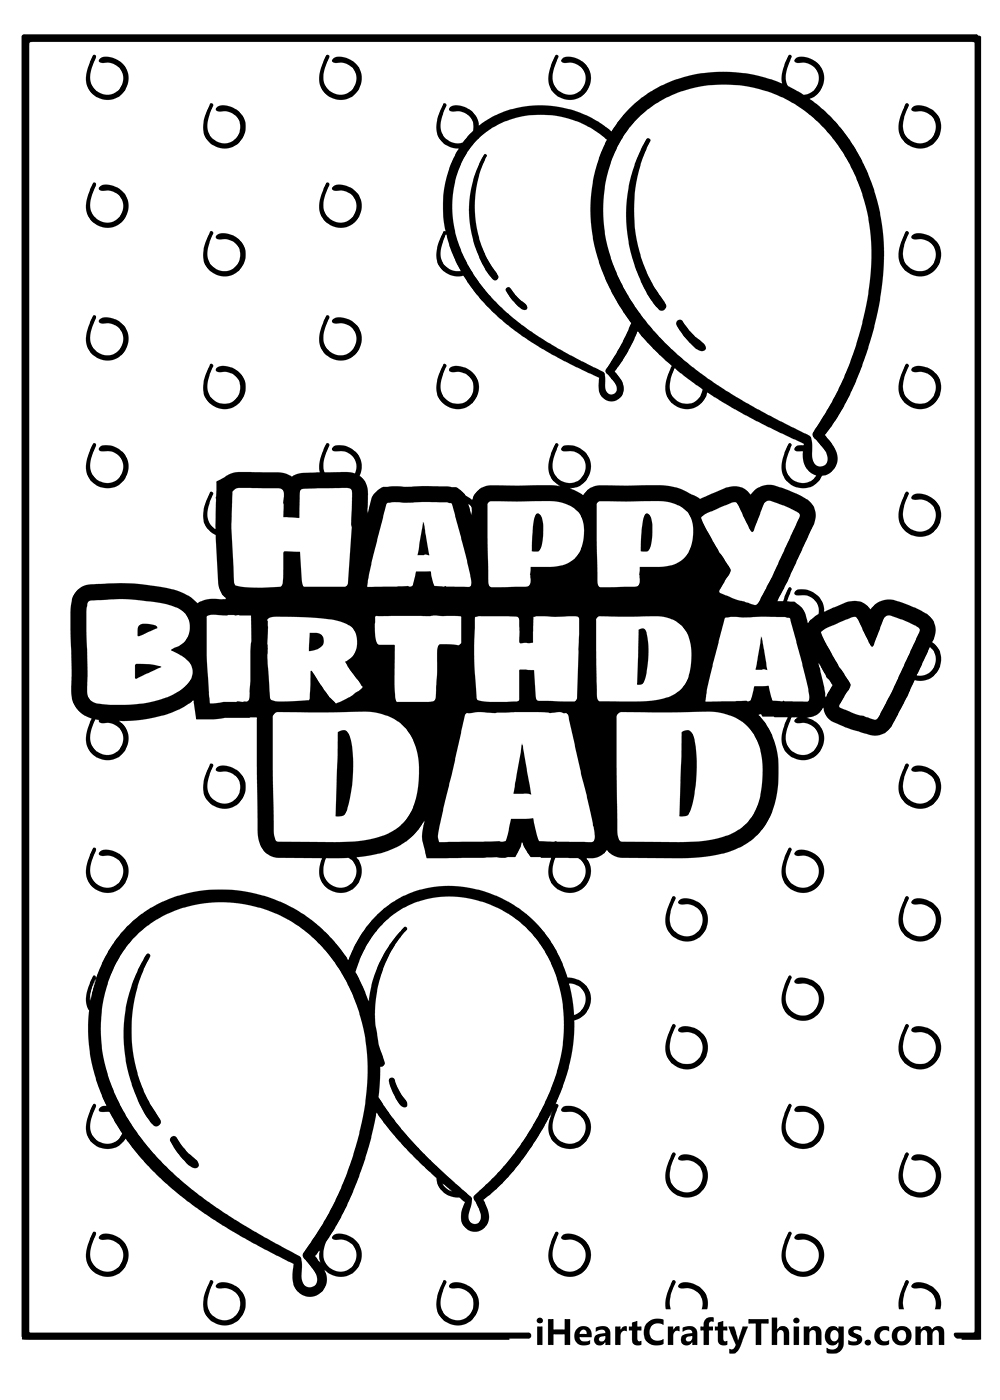 Happy Birthday Dad Coloring Book free printable